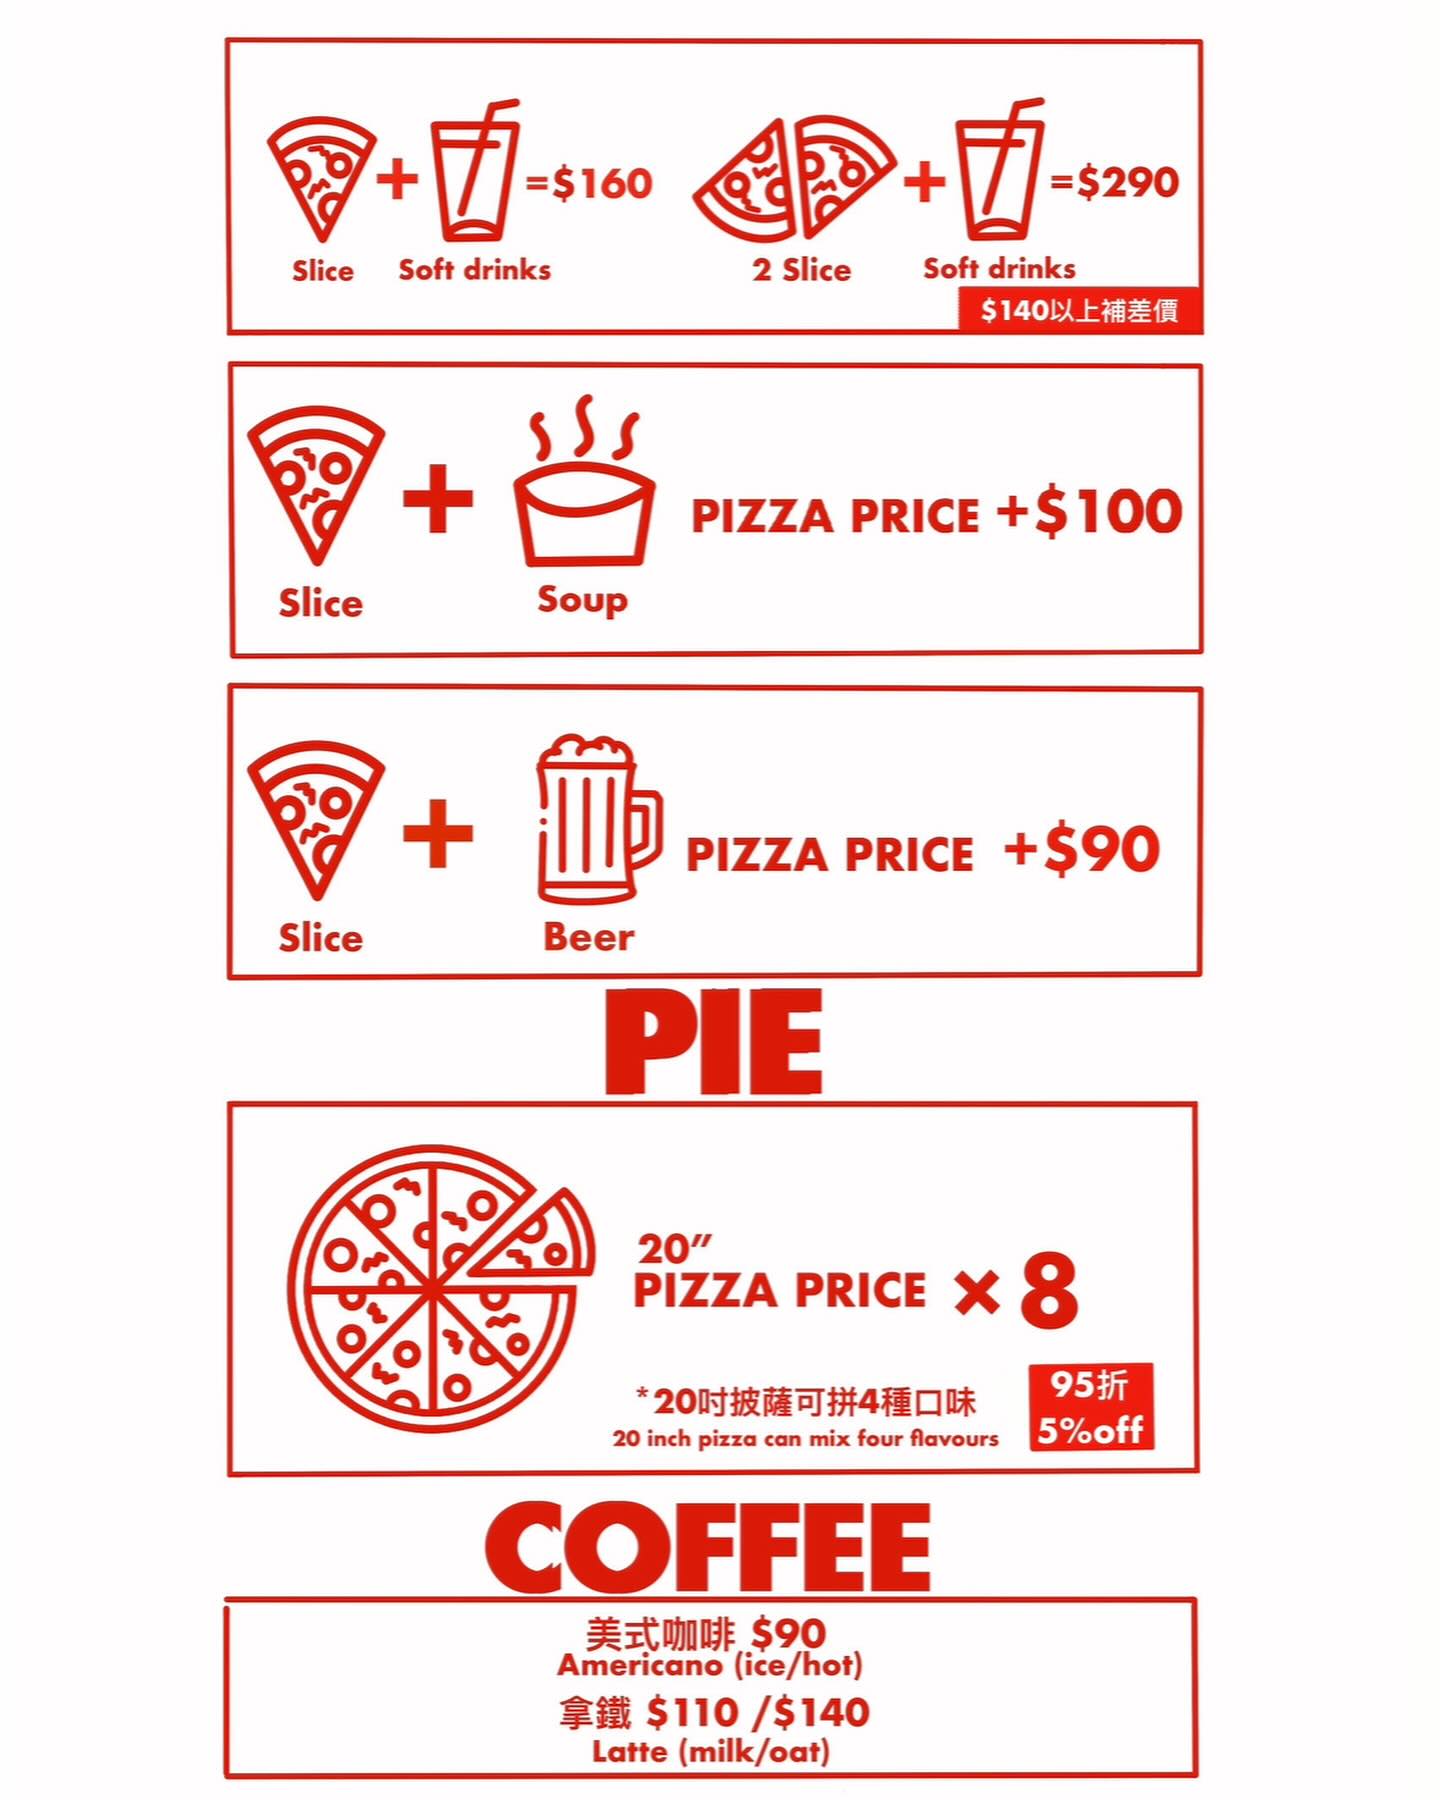 新竹 pizza pocket 大遠百附近超好吃美式紐約披薩店推薦 (附菜單)